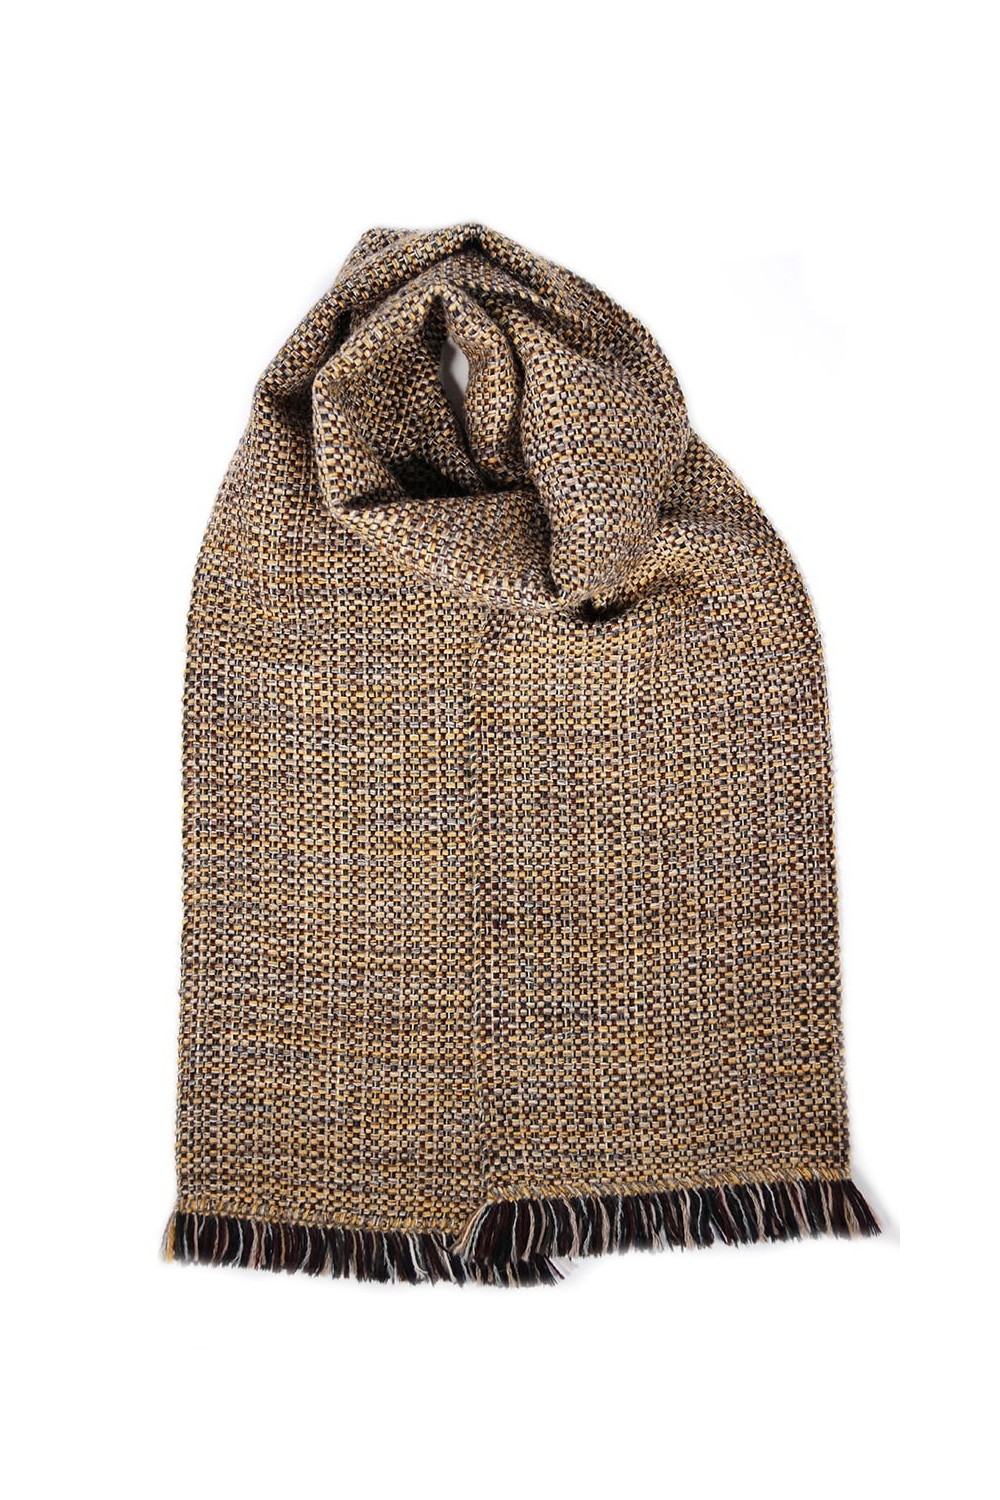 Bufanda hecha a mano en telar lana merino y alpaca